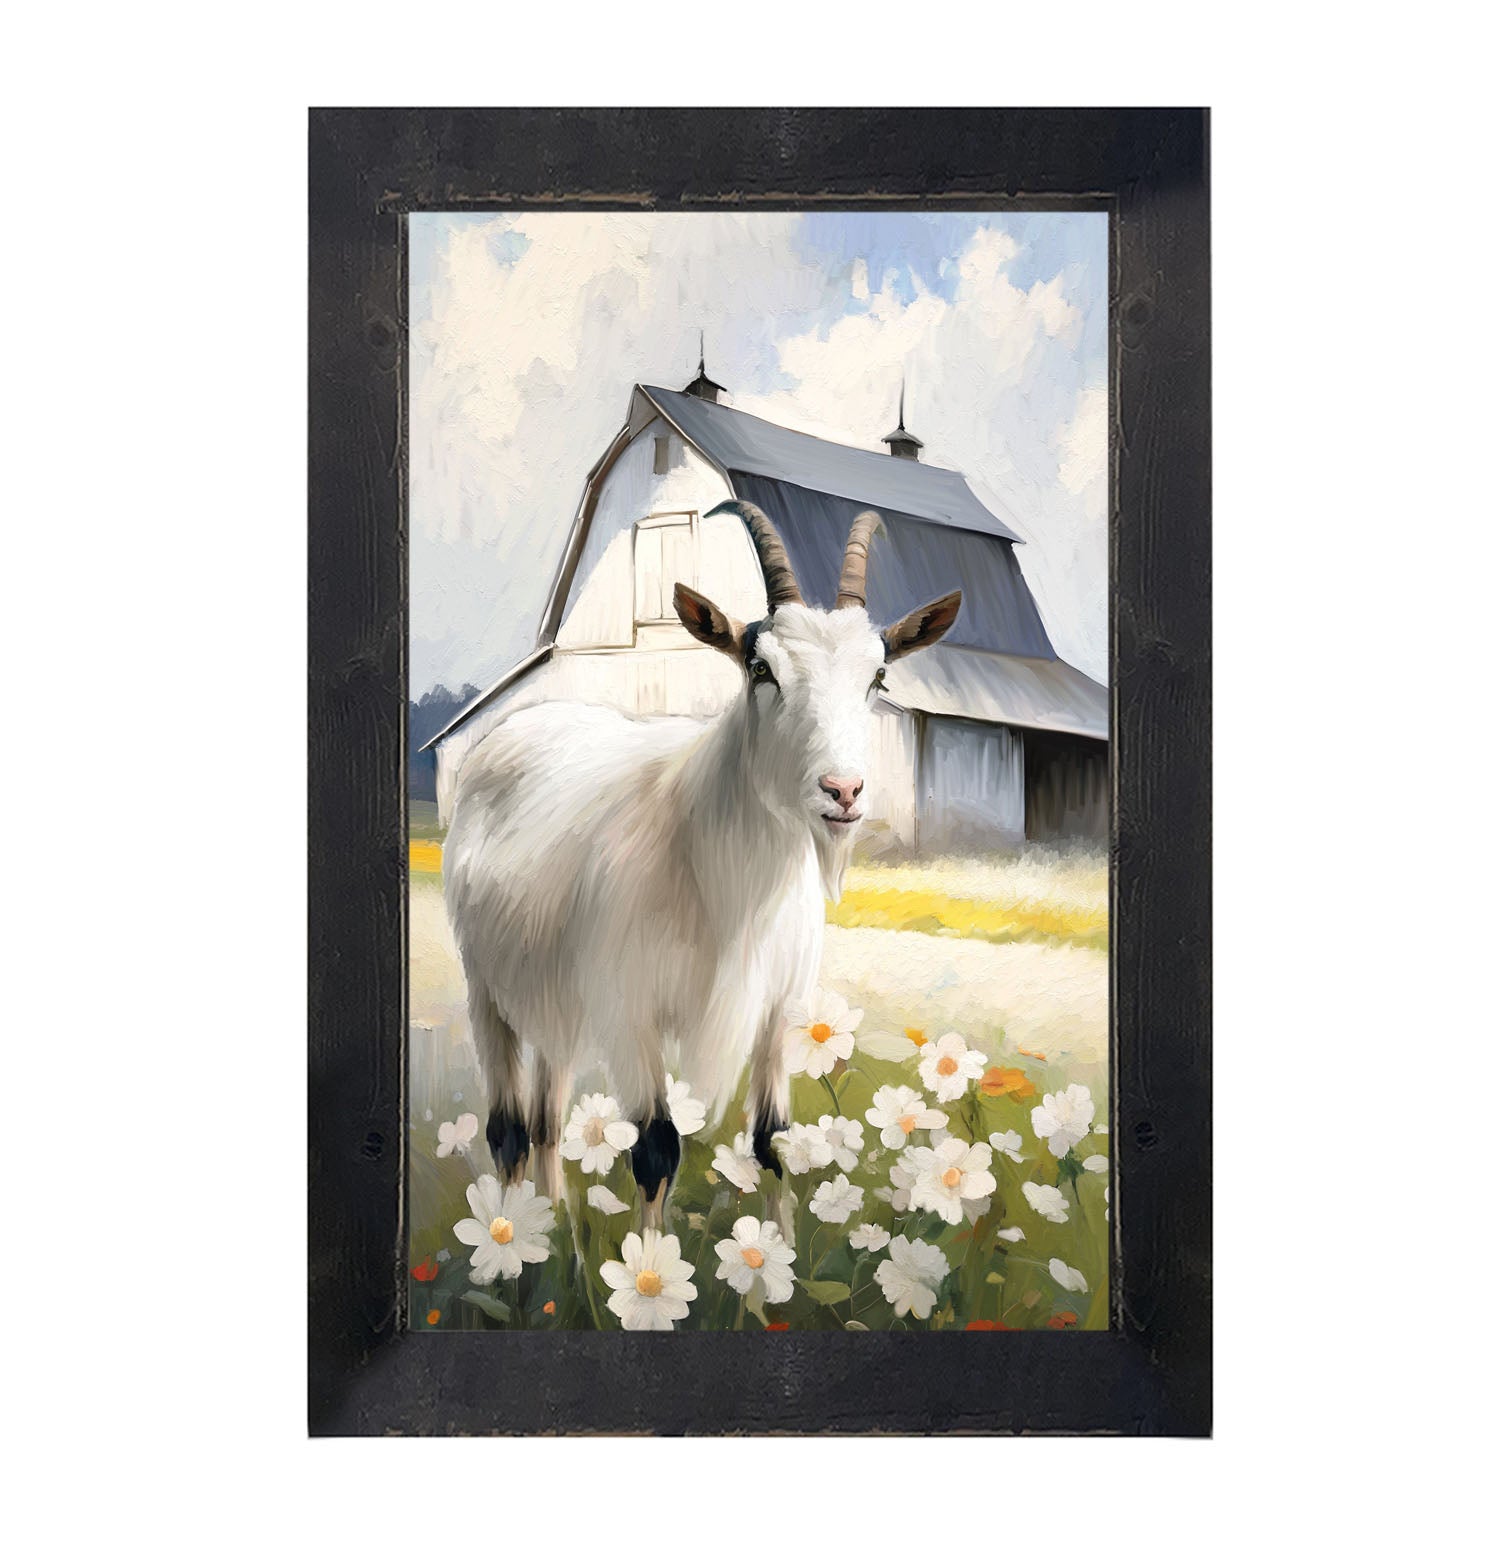 Goat in flowers